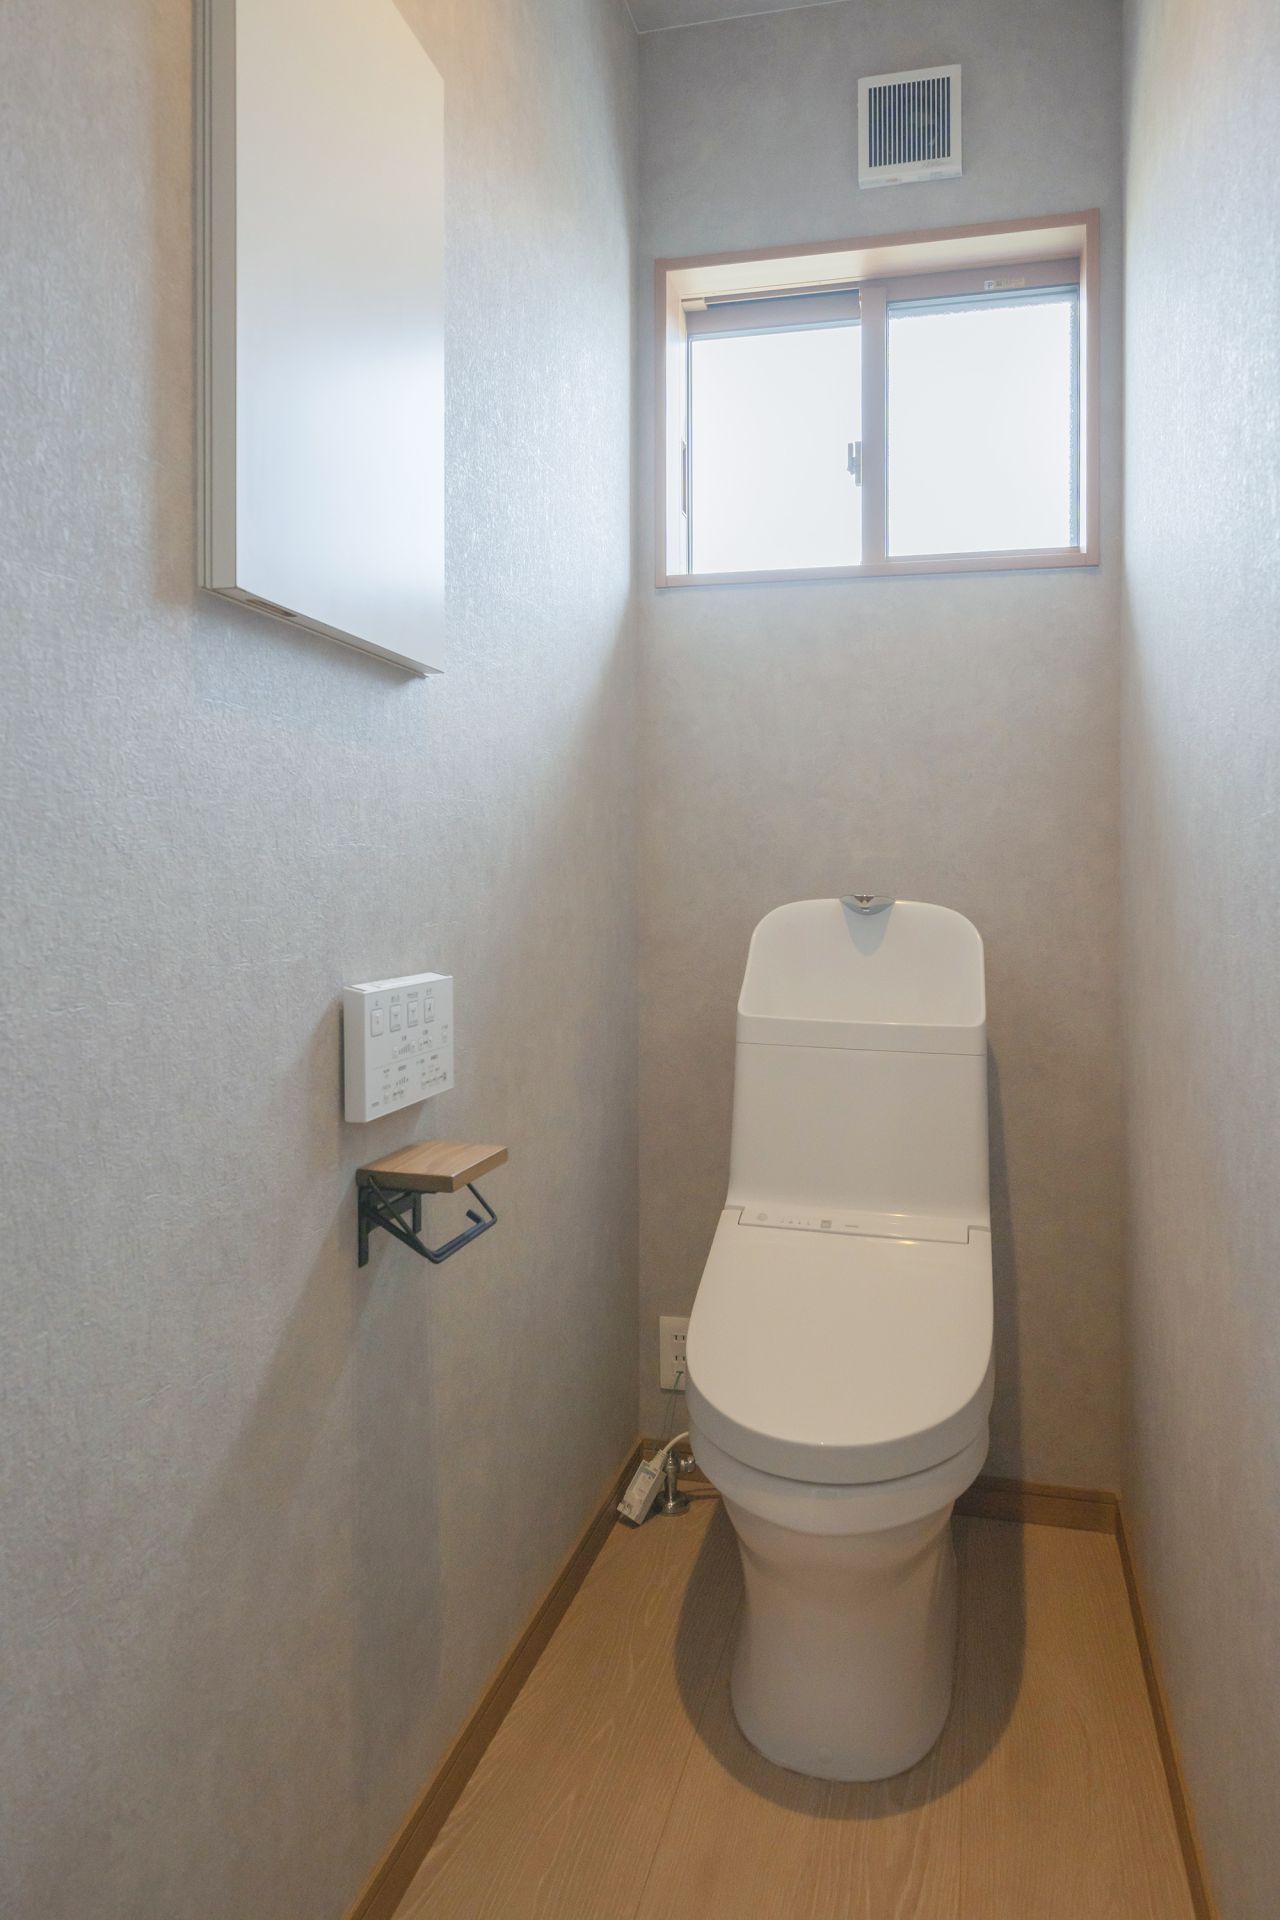 施工事例040-トイレの写真